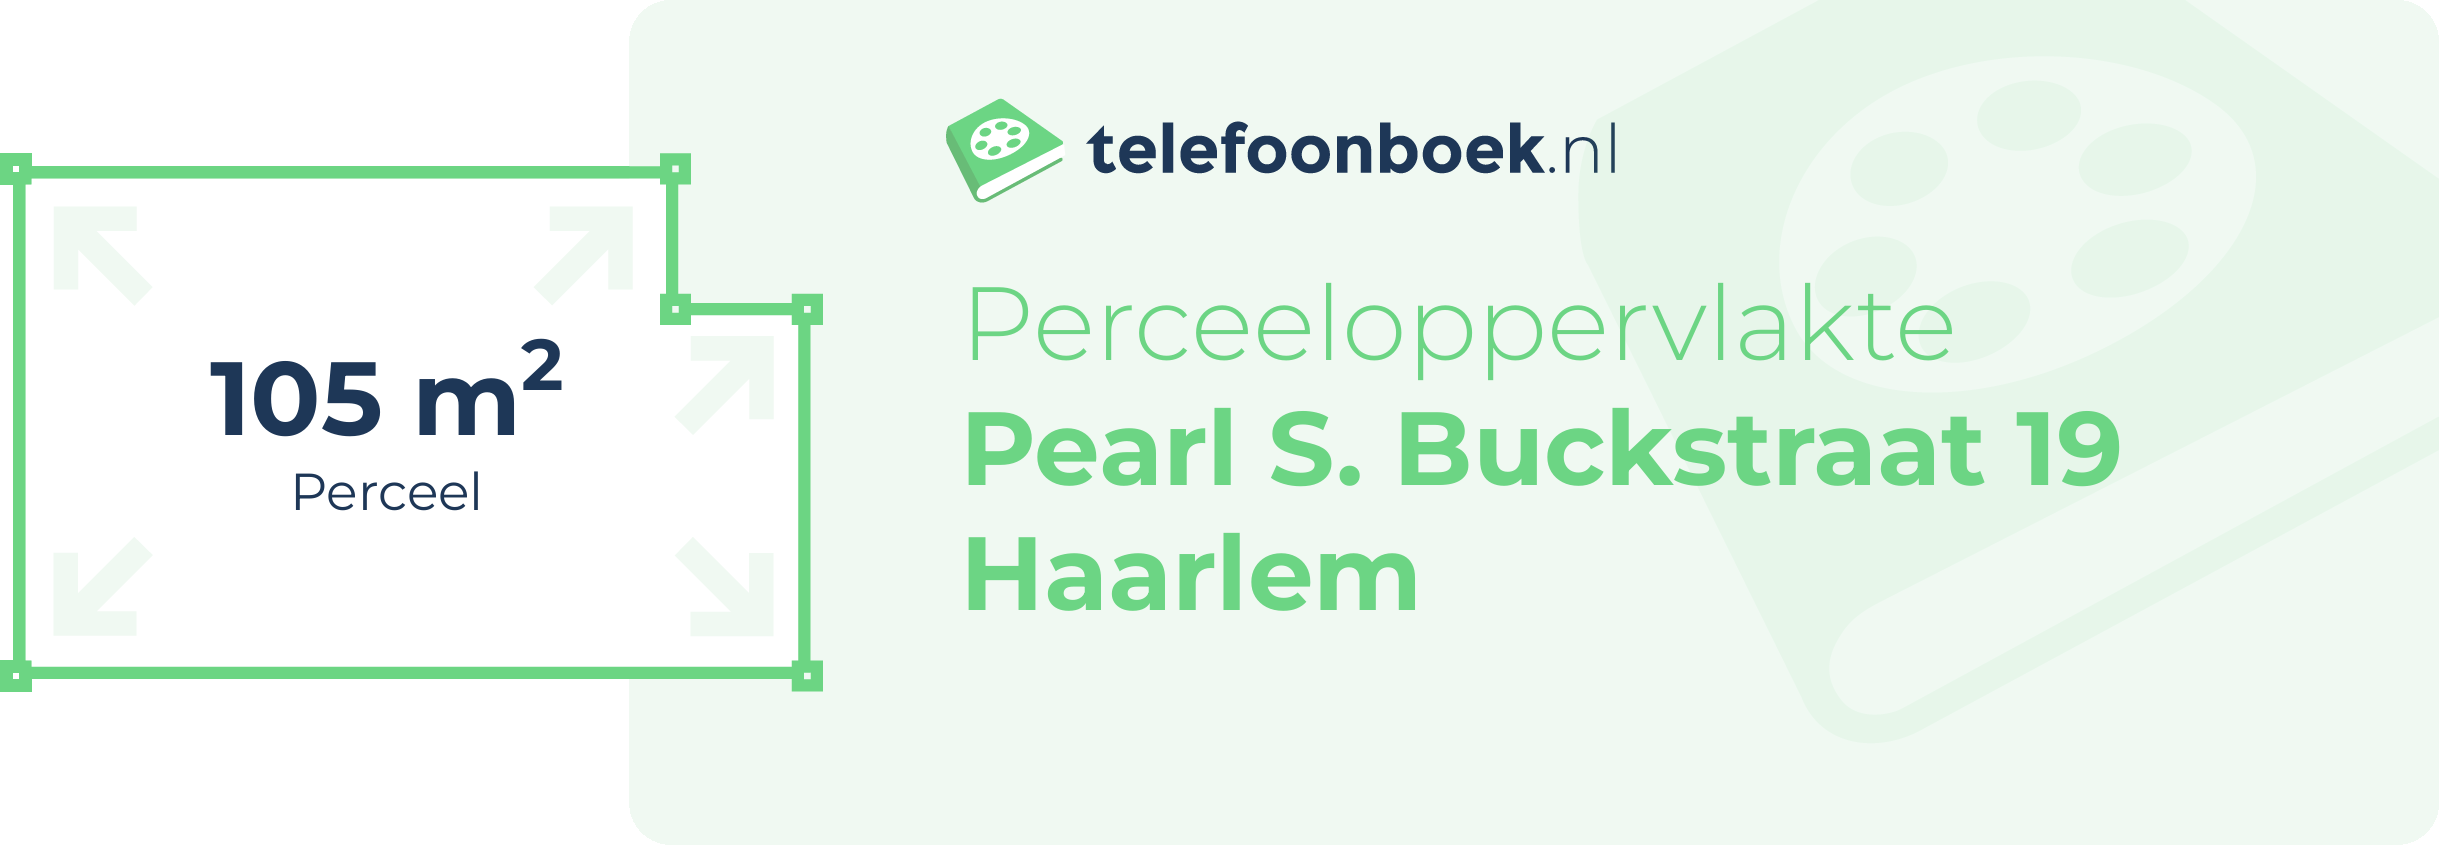 Perceeloppervlakte Pearl S. Buckstraat 19 Haarlem